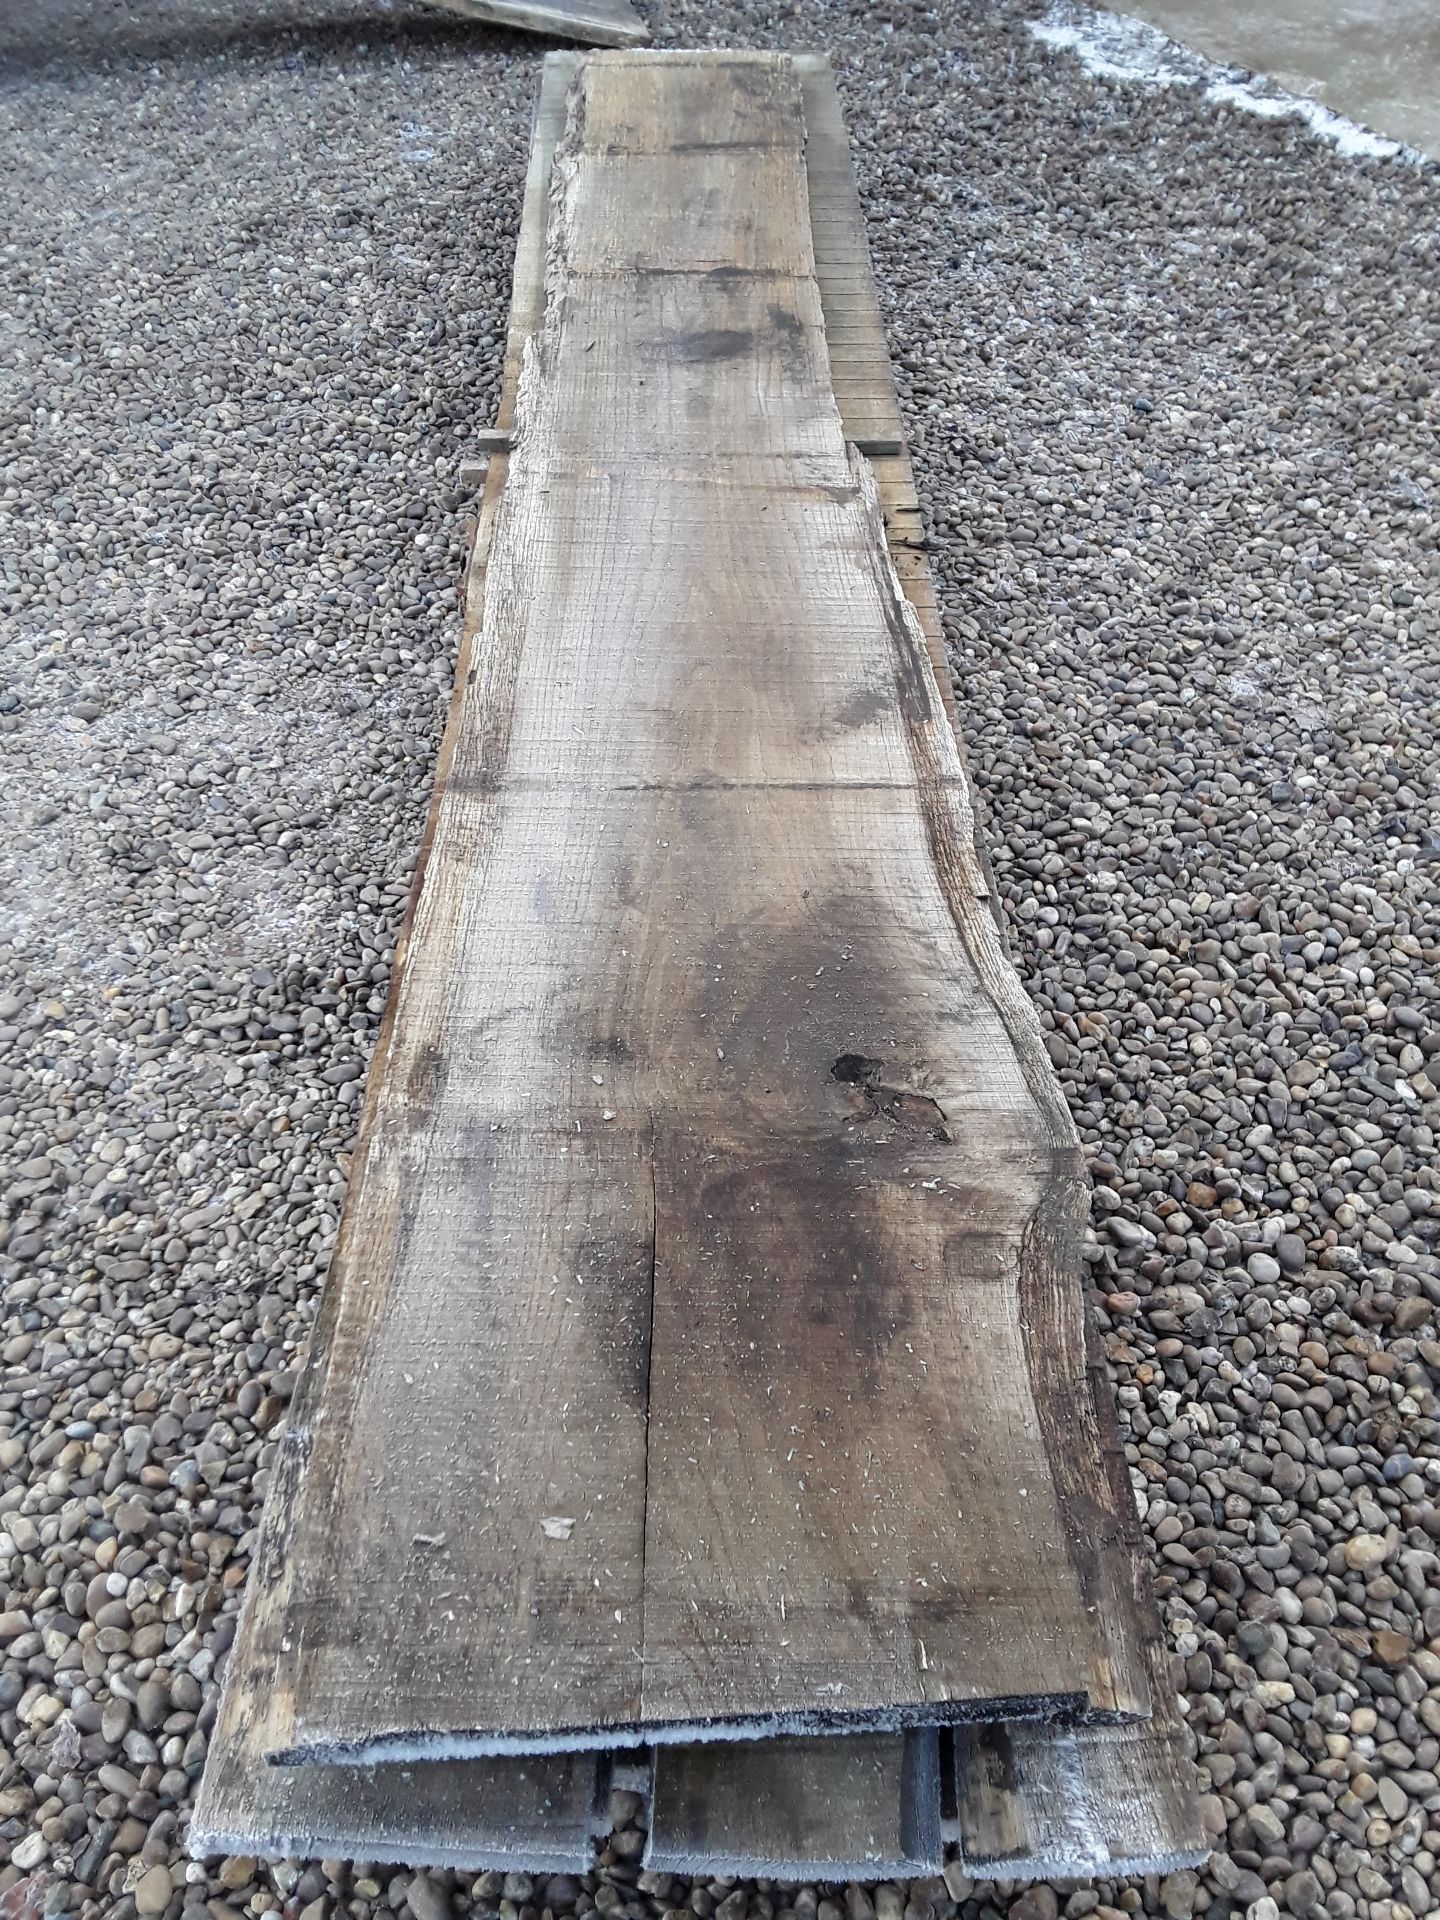 10 x Hardwood Timber Sawn Seasoned English Oak Waney Edge / Live Edge Boards/ Planks - Image 11 of 15